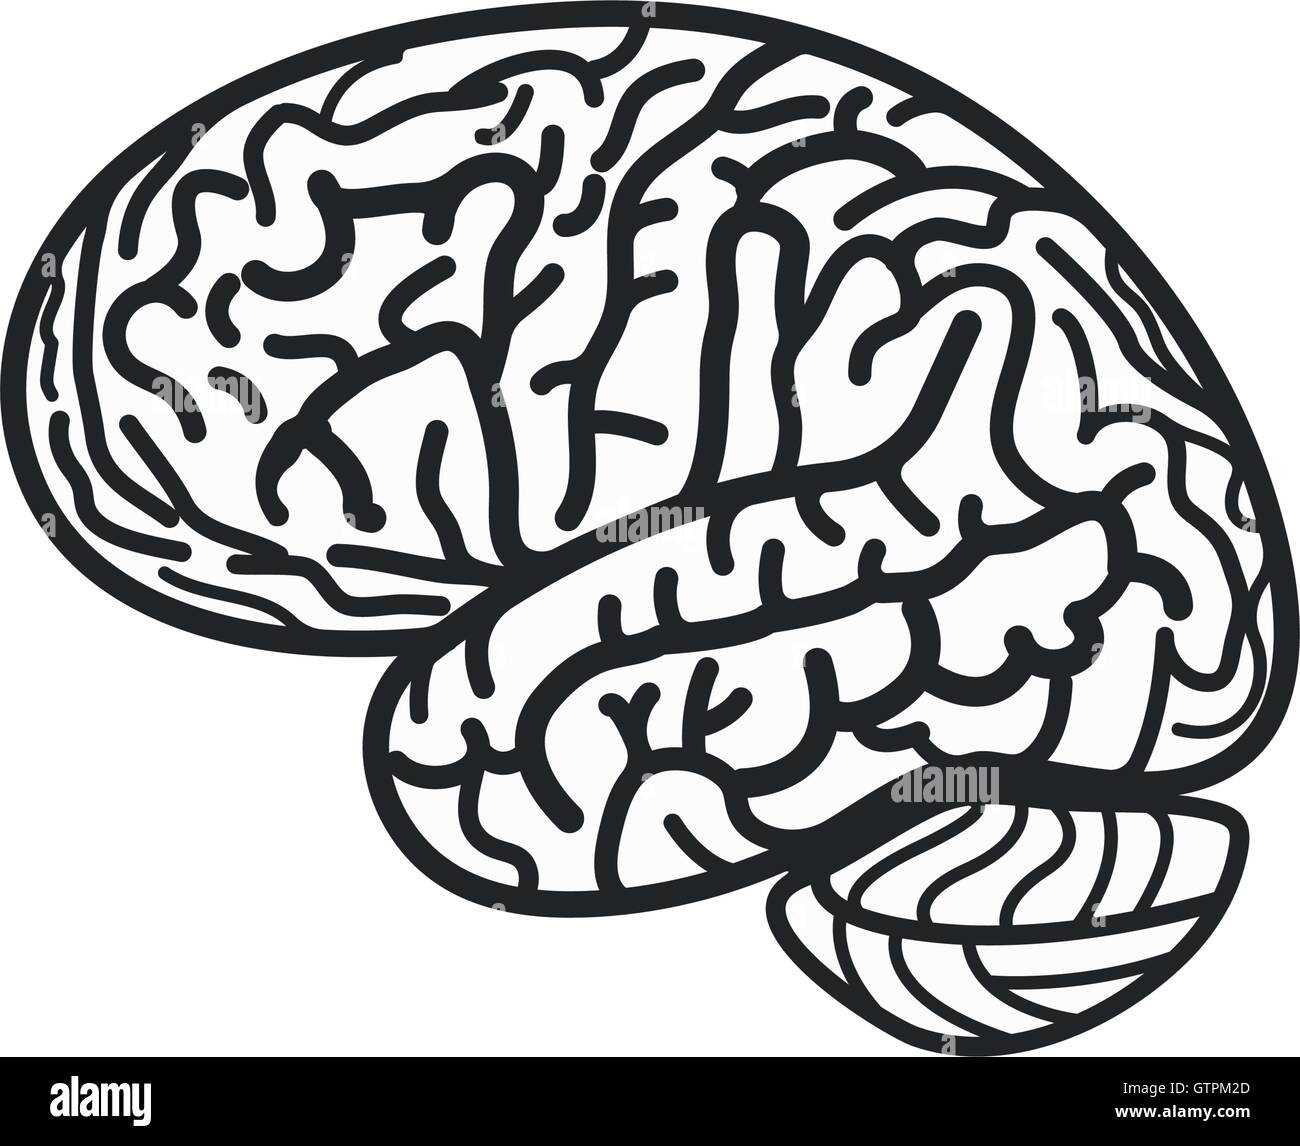 Isolierte schwarz-weiß Gehirn Kontur Vektor-Logo. Gyrus Silhouette Schriftzug. Abbildung der menschlichen Intelligenz. Stock Vektor